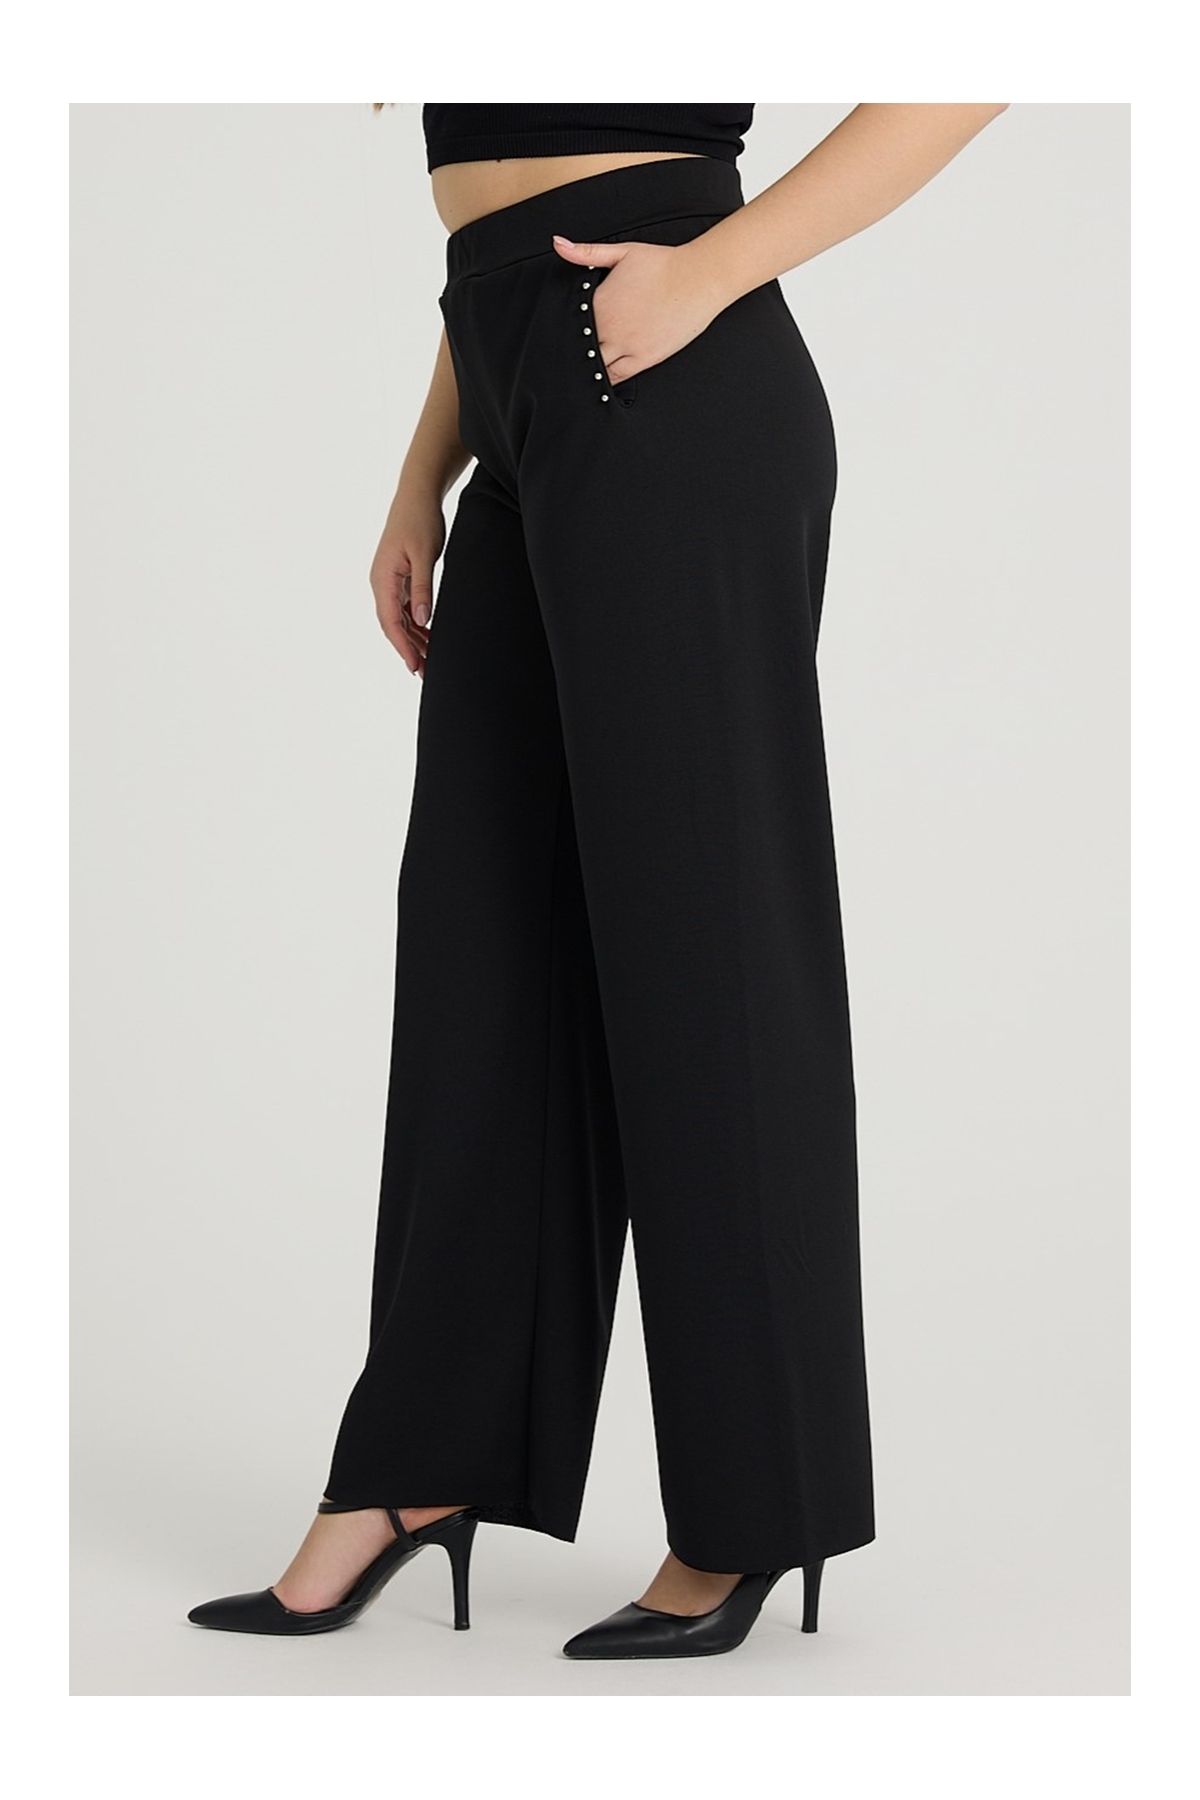 Gül Moda Kadın Büyük Beden Likralı Kumaş Pantolon Cep Taş Detaylı G111-1